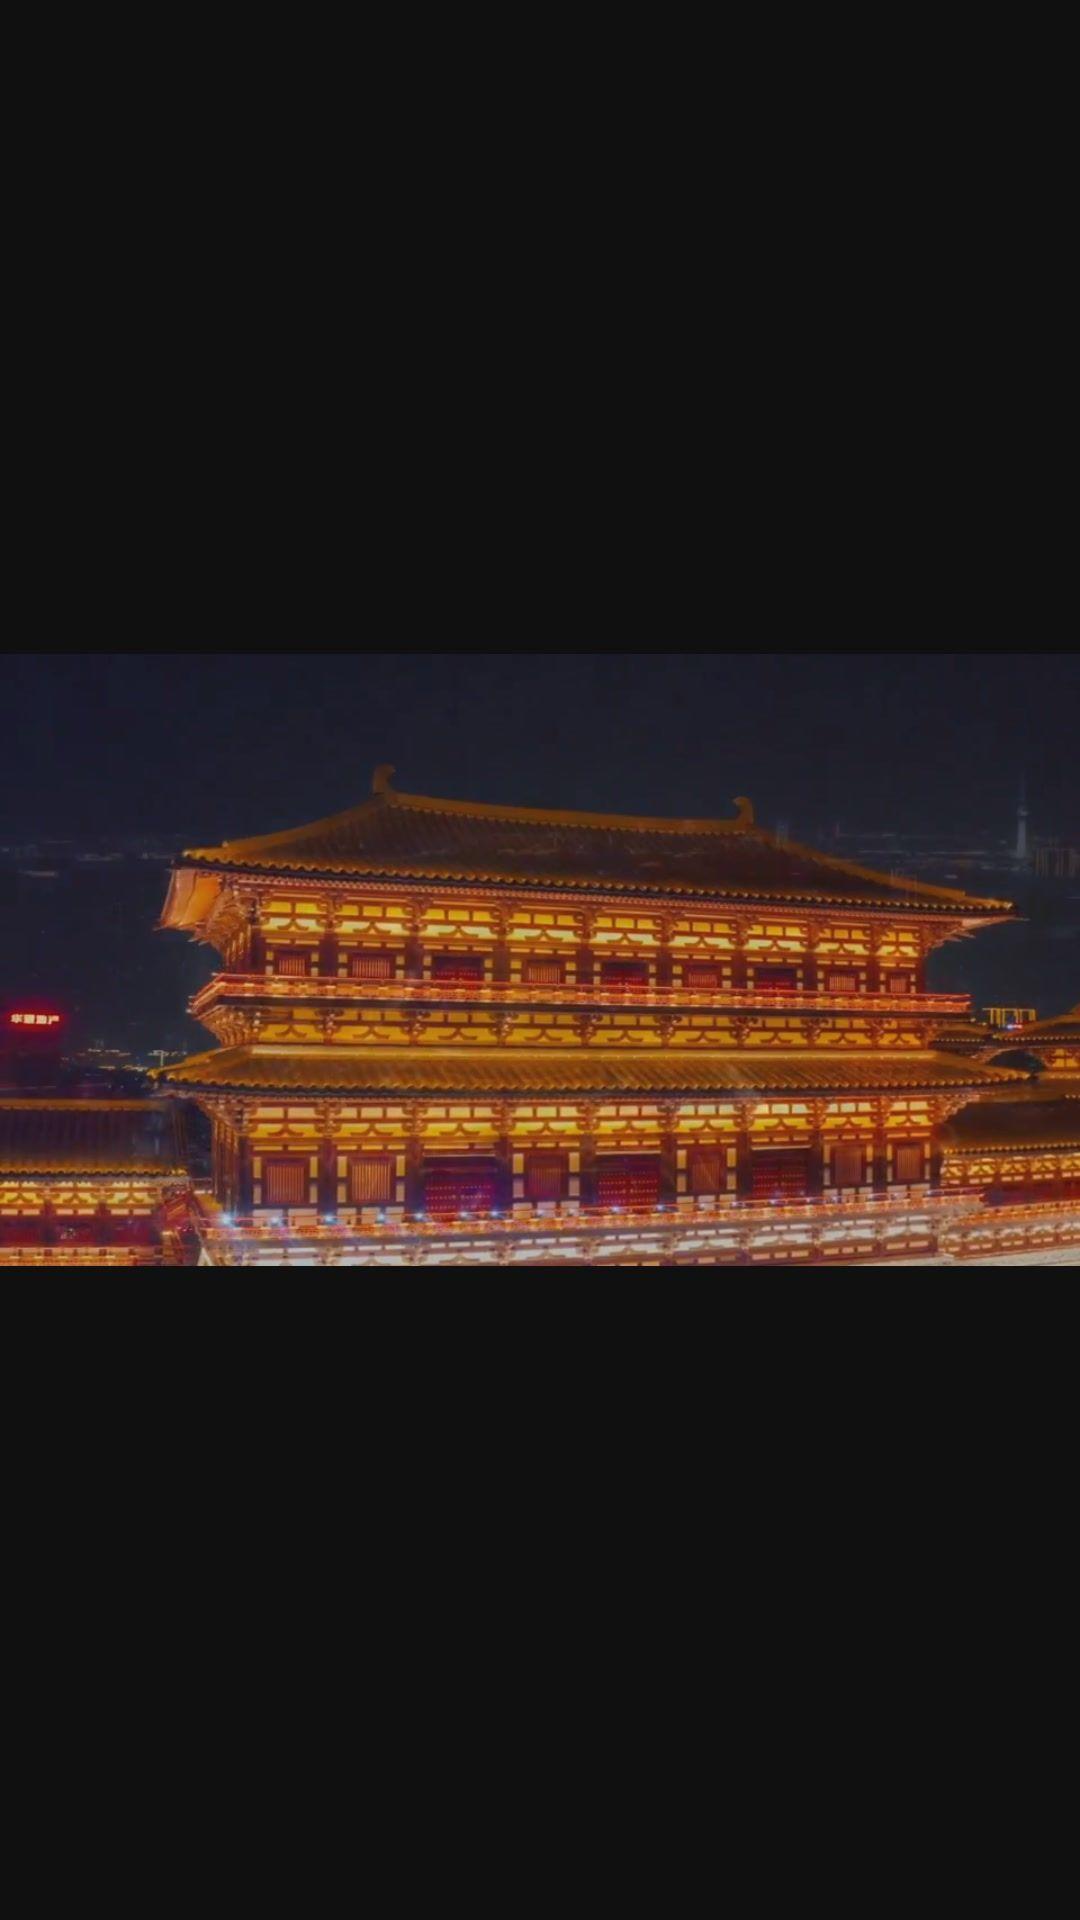 『大理寺日志』:洛阳?长安?唐朝首都的知识你懂多少?